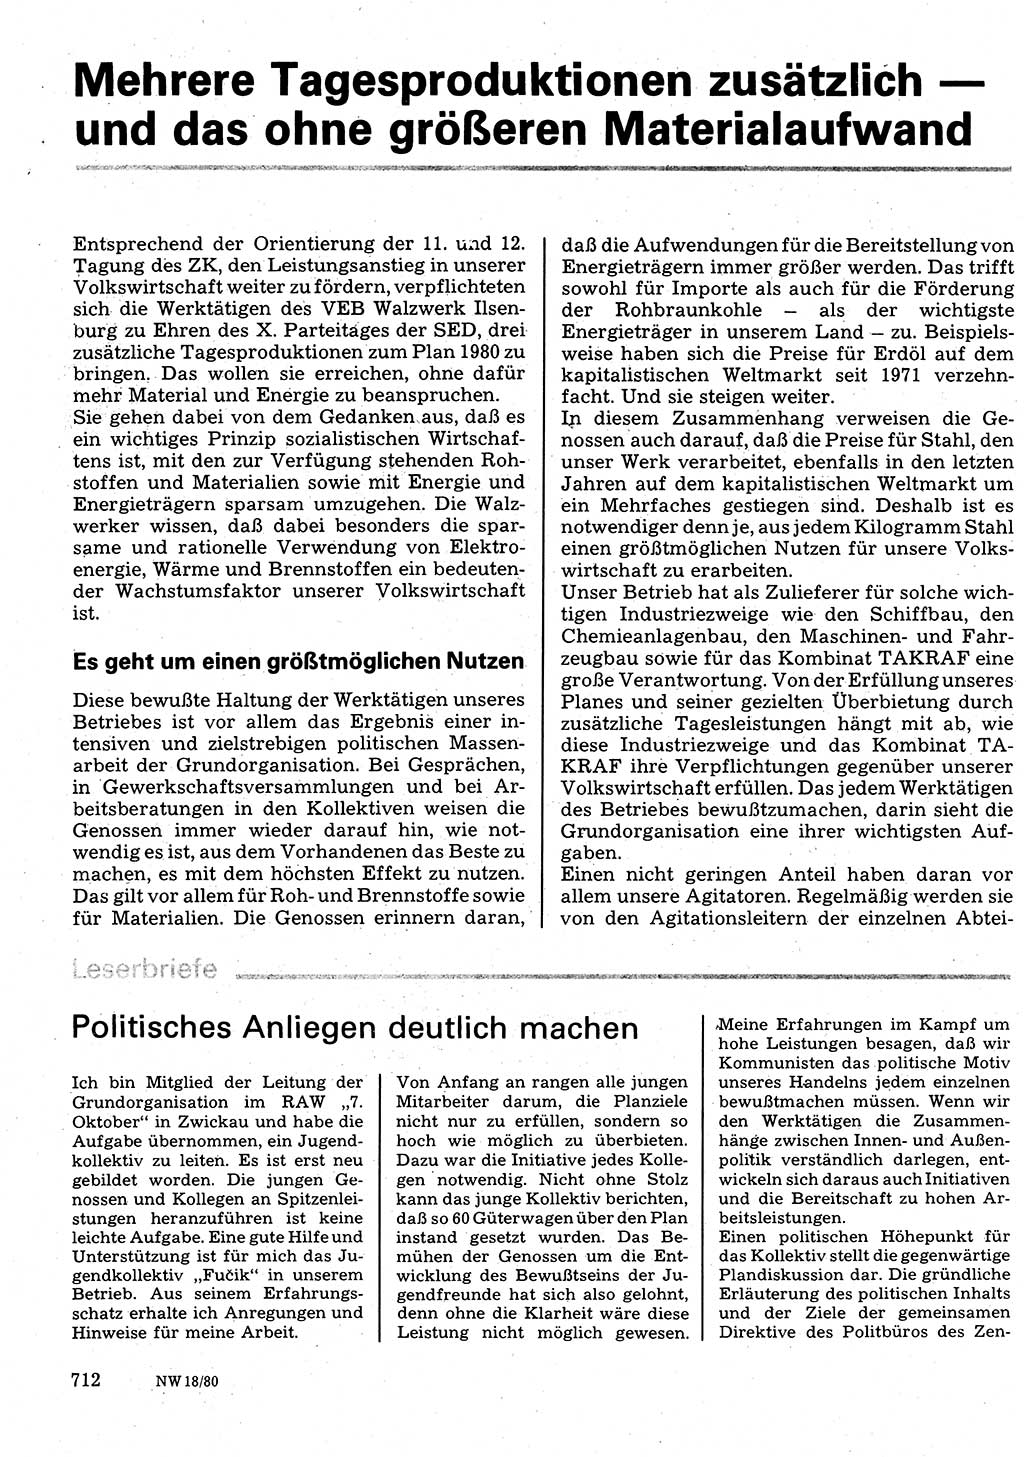 Neuer Weg (NW), Organ des Zentralkomitees (ZK) der SED (Sozialistische Einheitspartei Deutschlands) für Fragen des Parteilebens, 35. Jahrgang [Deutsche Demokratische Republik (DDR)] 1980, Seite 712 (NW ZK SED DDR 1980, S. 712)